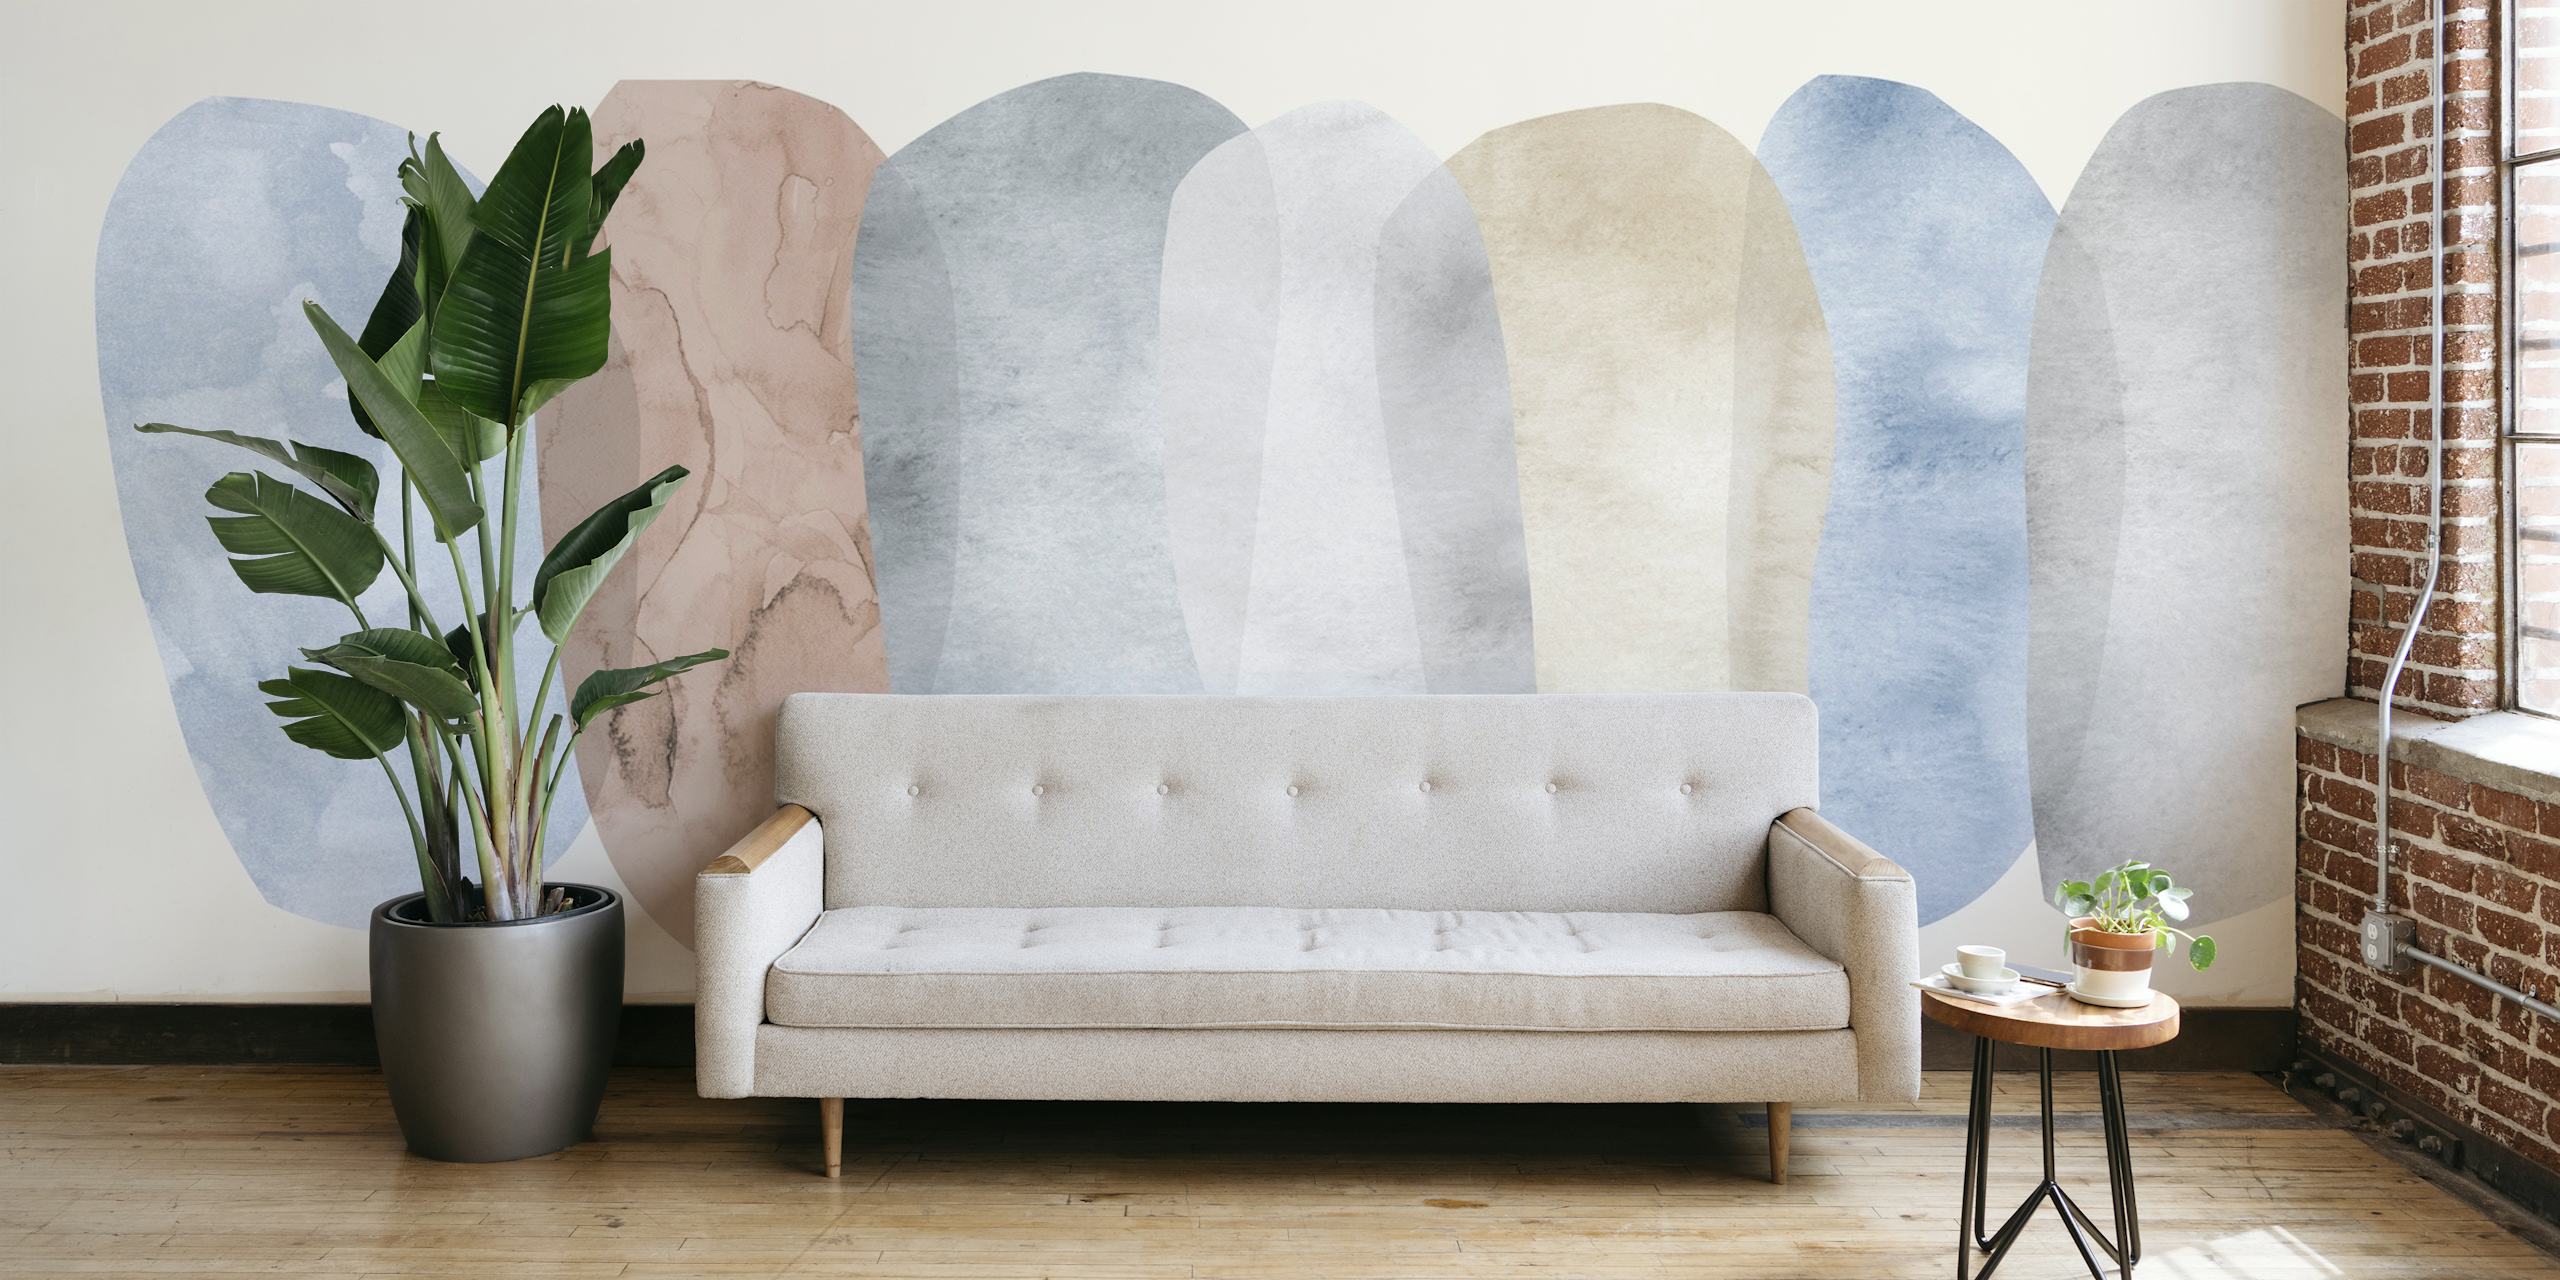 Pastellfarbene abstrakte Collagen-Wandtapete mit beruhigenden Blau- und Neutraltönen